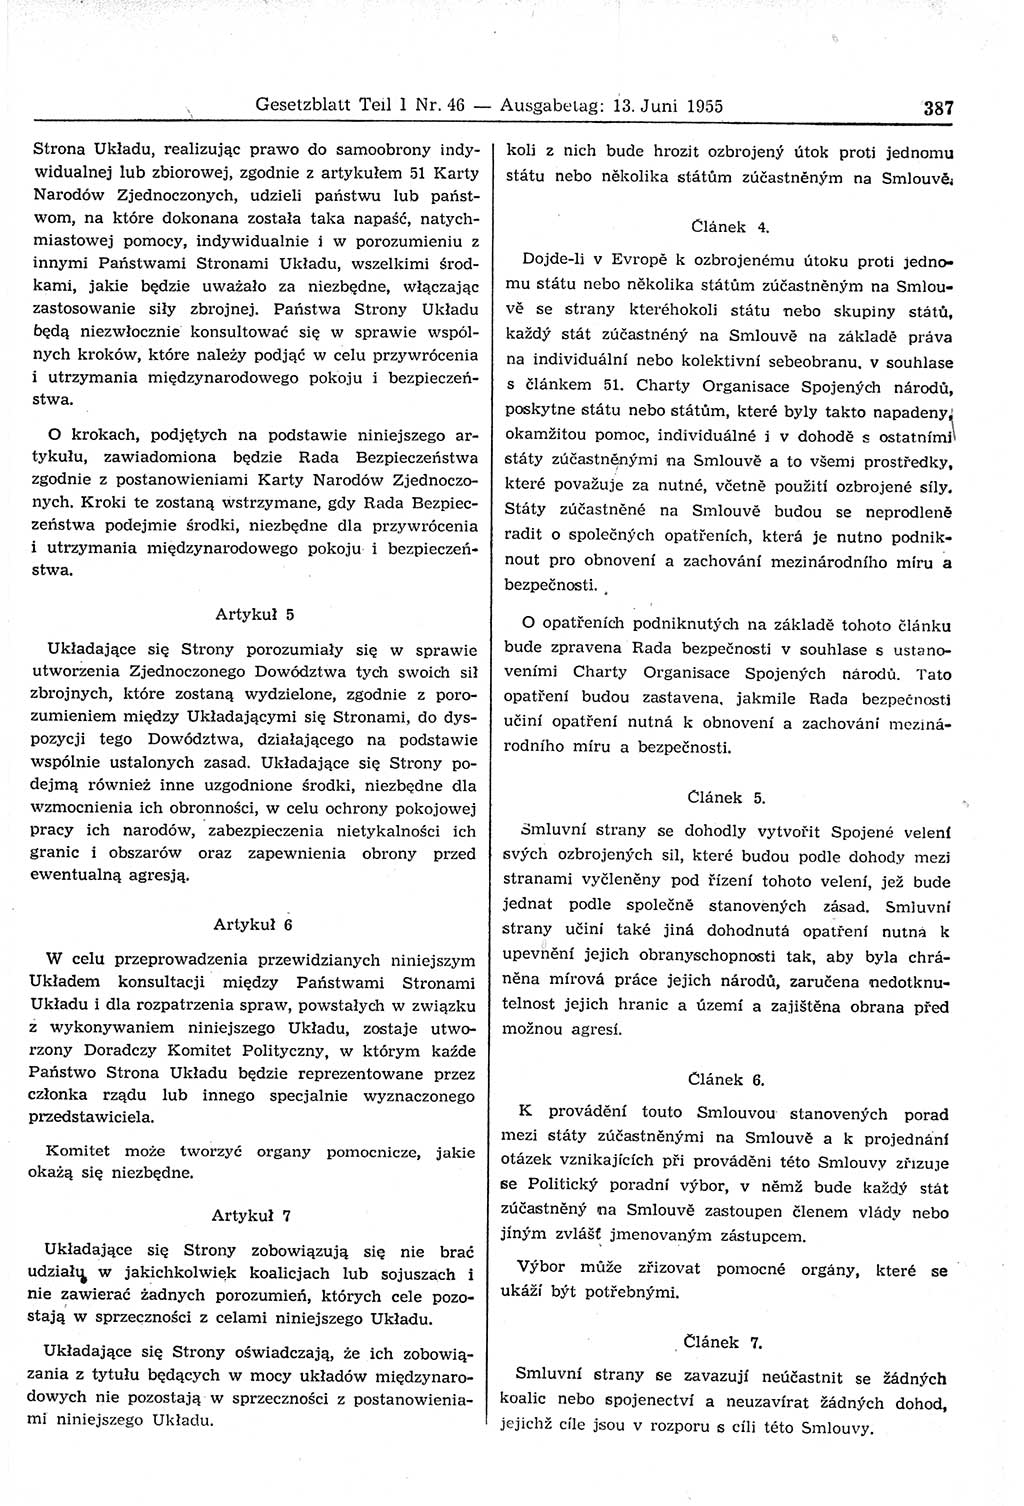 Gesetzblatt (GBl.) der Deutschen Demokratischen Republik (DDR) Teil Ⅰ 1955, Seite 387 (GBl. DDR Ⅰ 1955, S. 387)